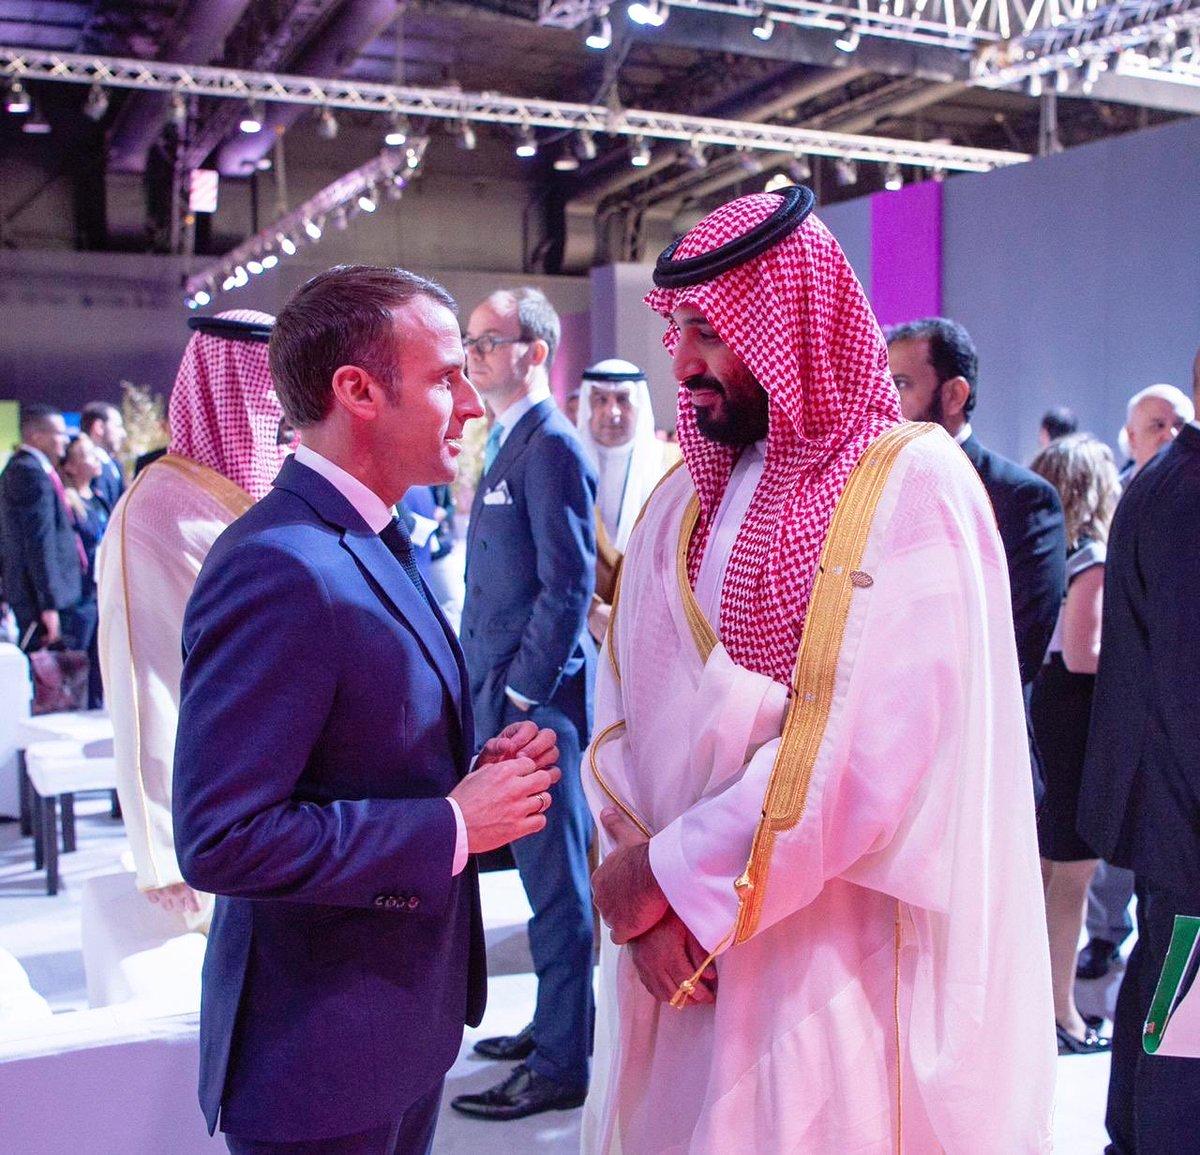 ولي العهد السعودي الأمير محمد بن سلمان يتحدث مع الرئيس الفرنسي امانويل ماكرون